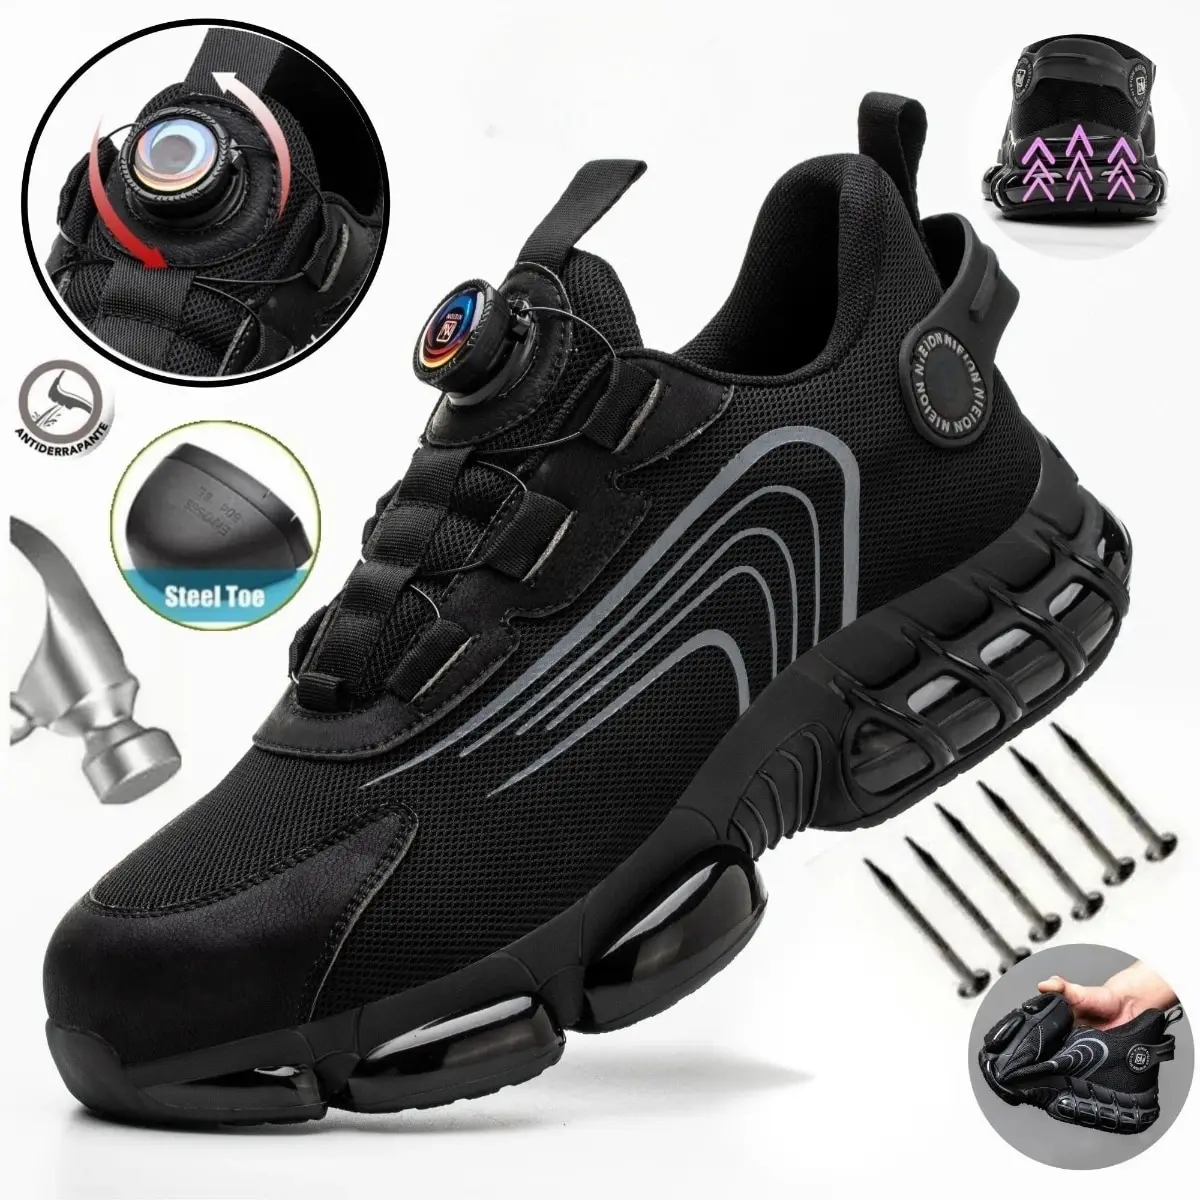 회전식 버클 작업 스니커즈, 안전 산업 신발, 펑크 방지, 충돌 방지 강철 발가락 신발